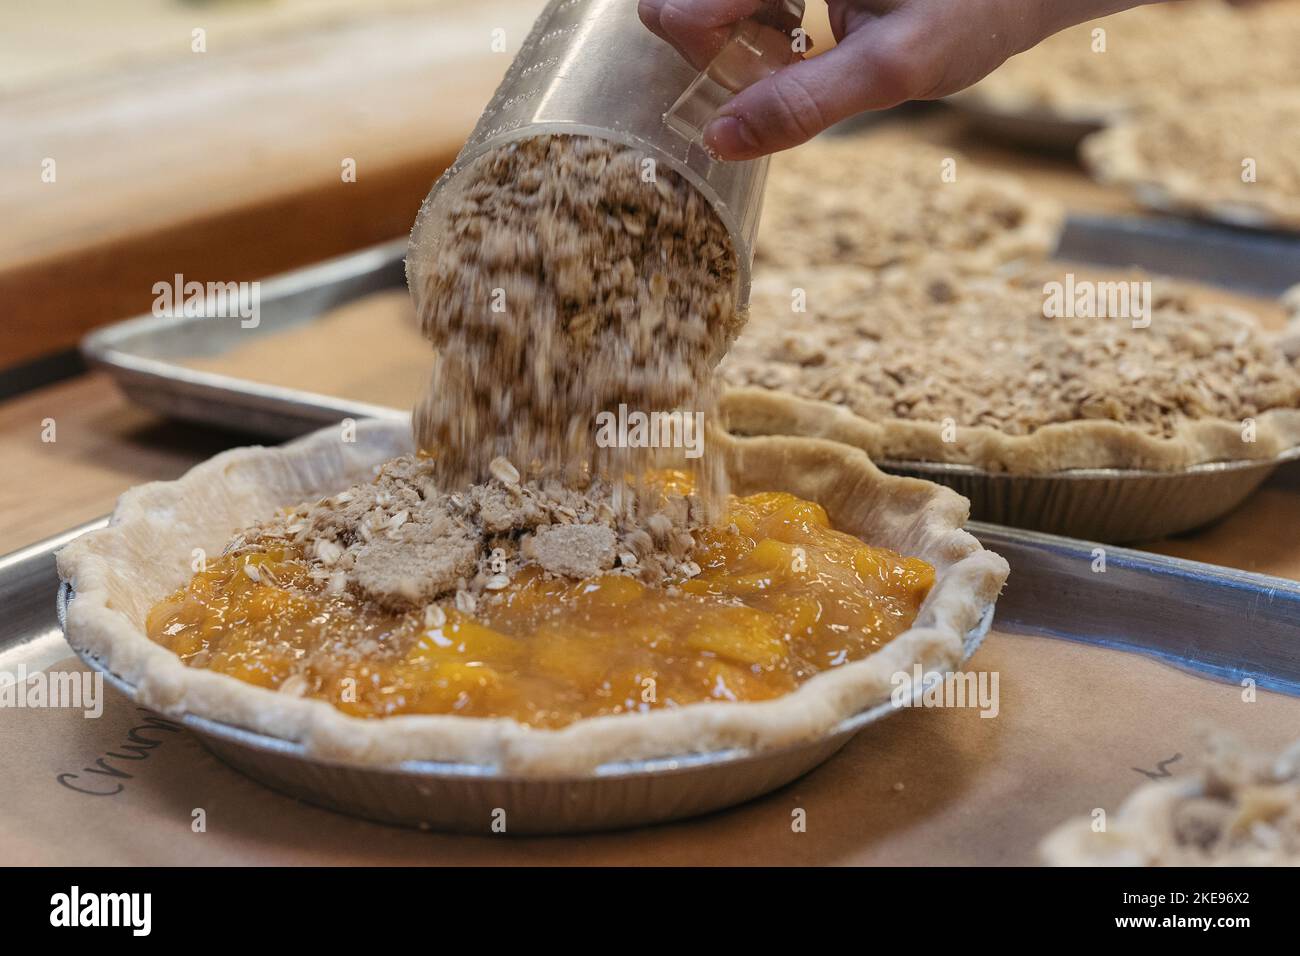 Ein glutenfreier Belag wird auf einen Kuchen mit Pfirsichfüllung gegossen Stockfoto